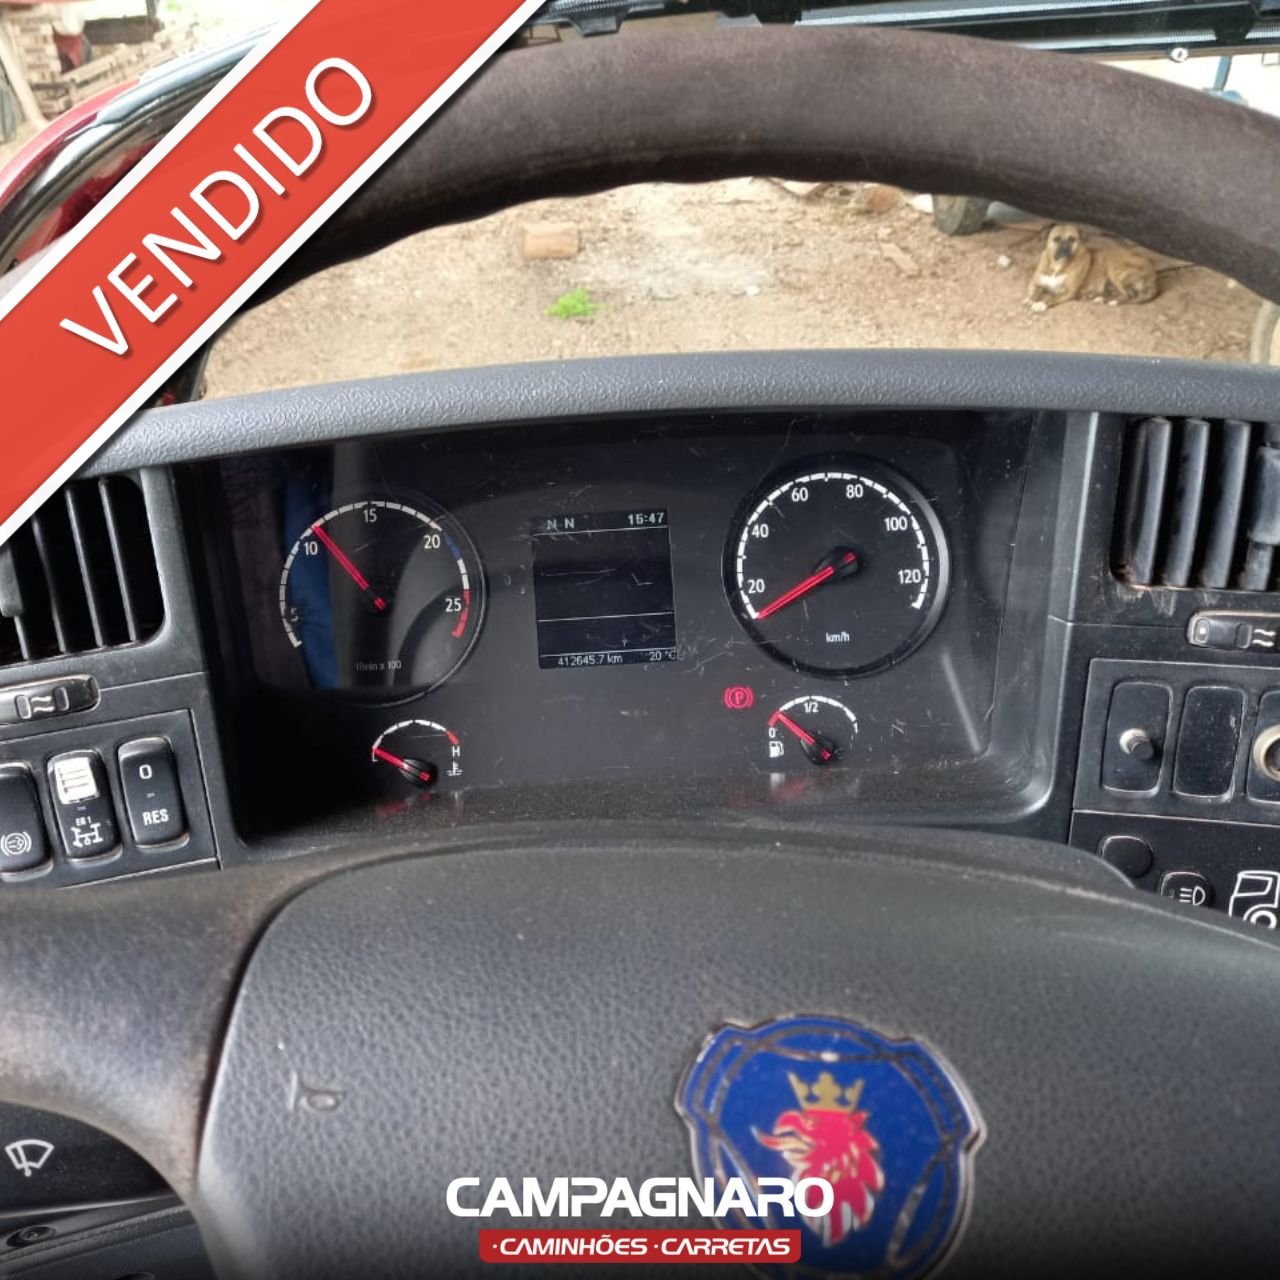 Scania P310 BiTruck - 2013 - Caminhões - Cidade Nova, Salvador 1186387351